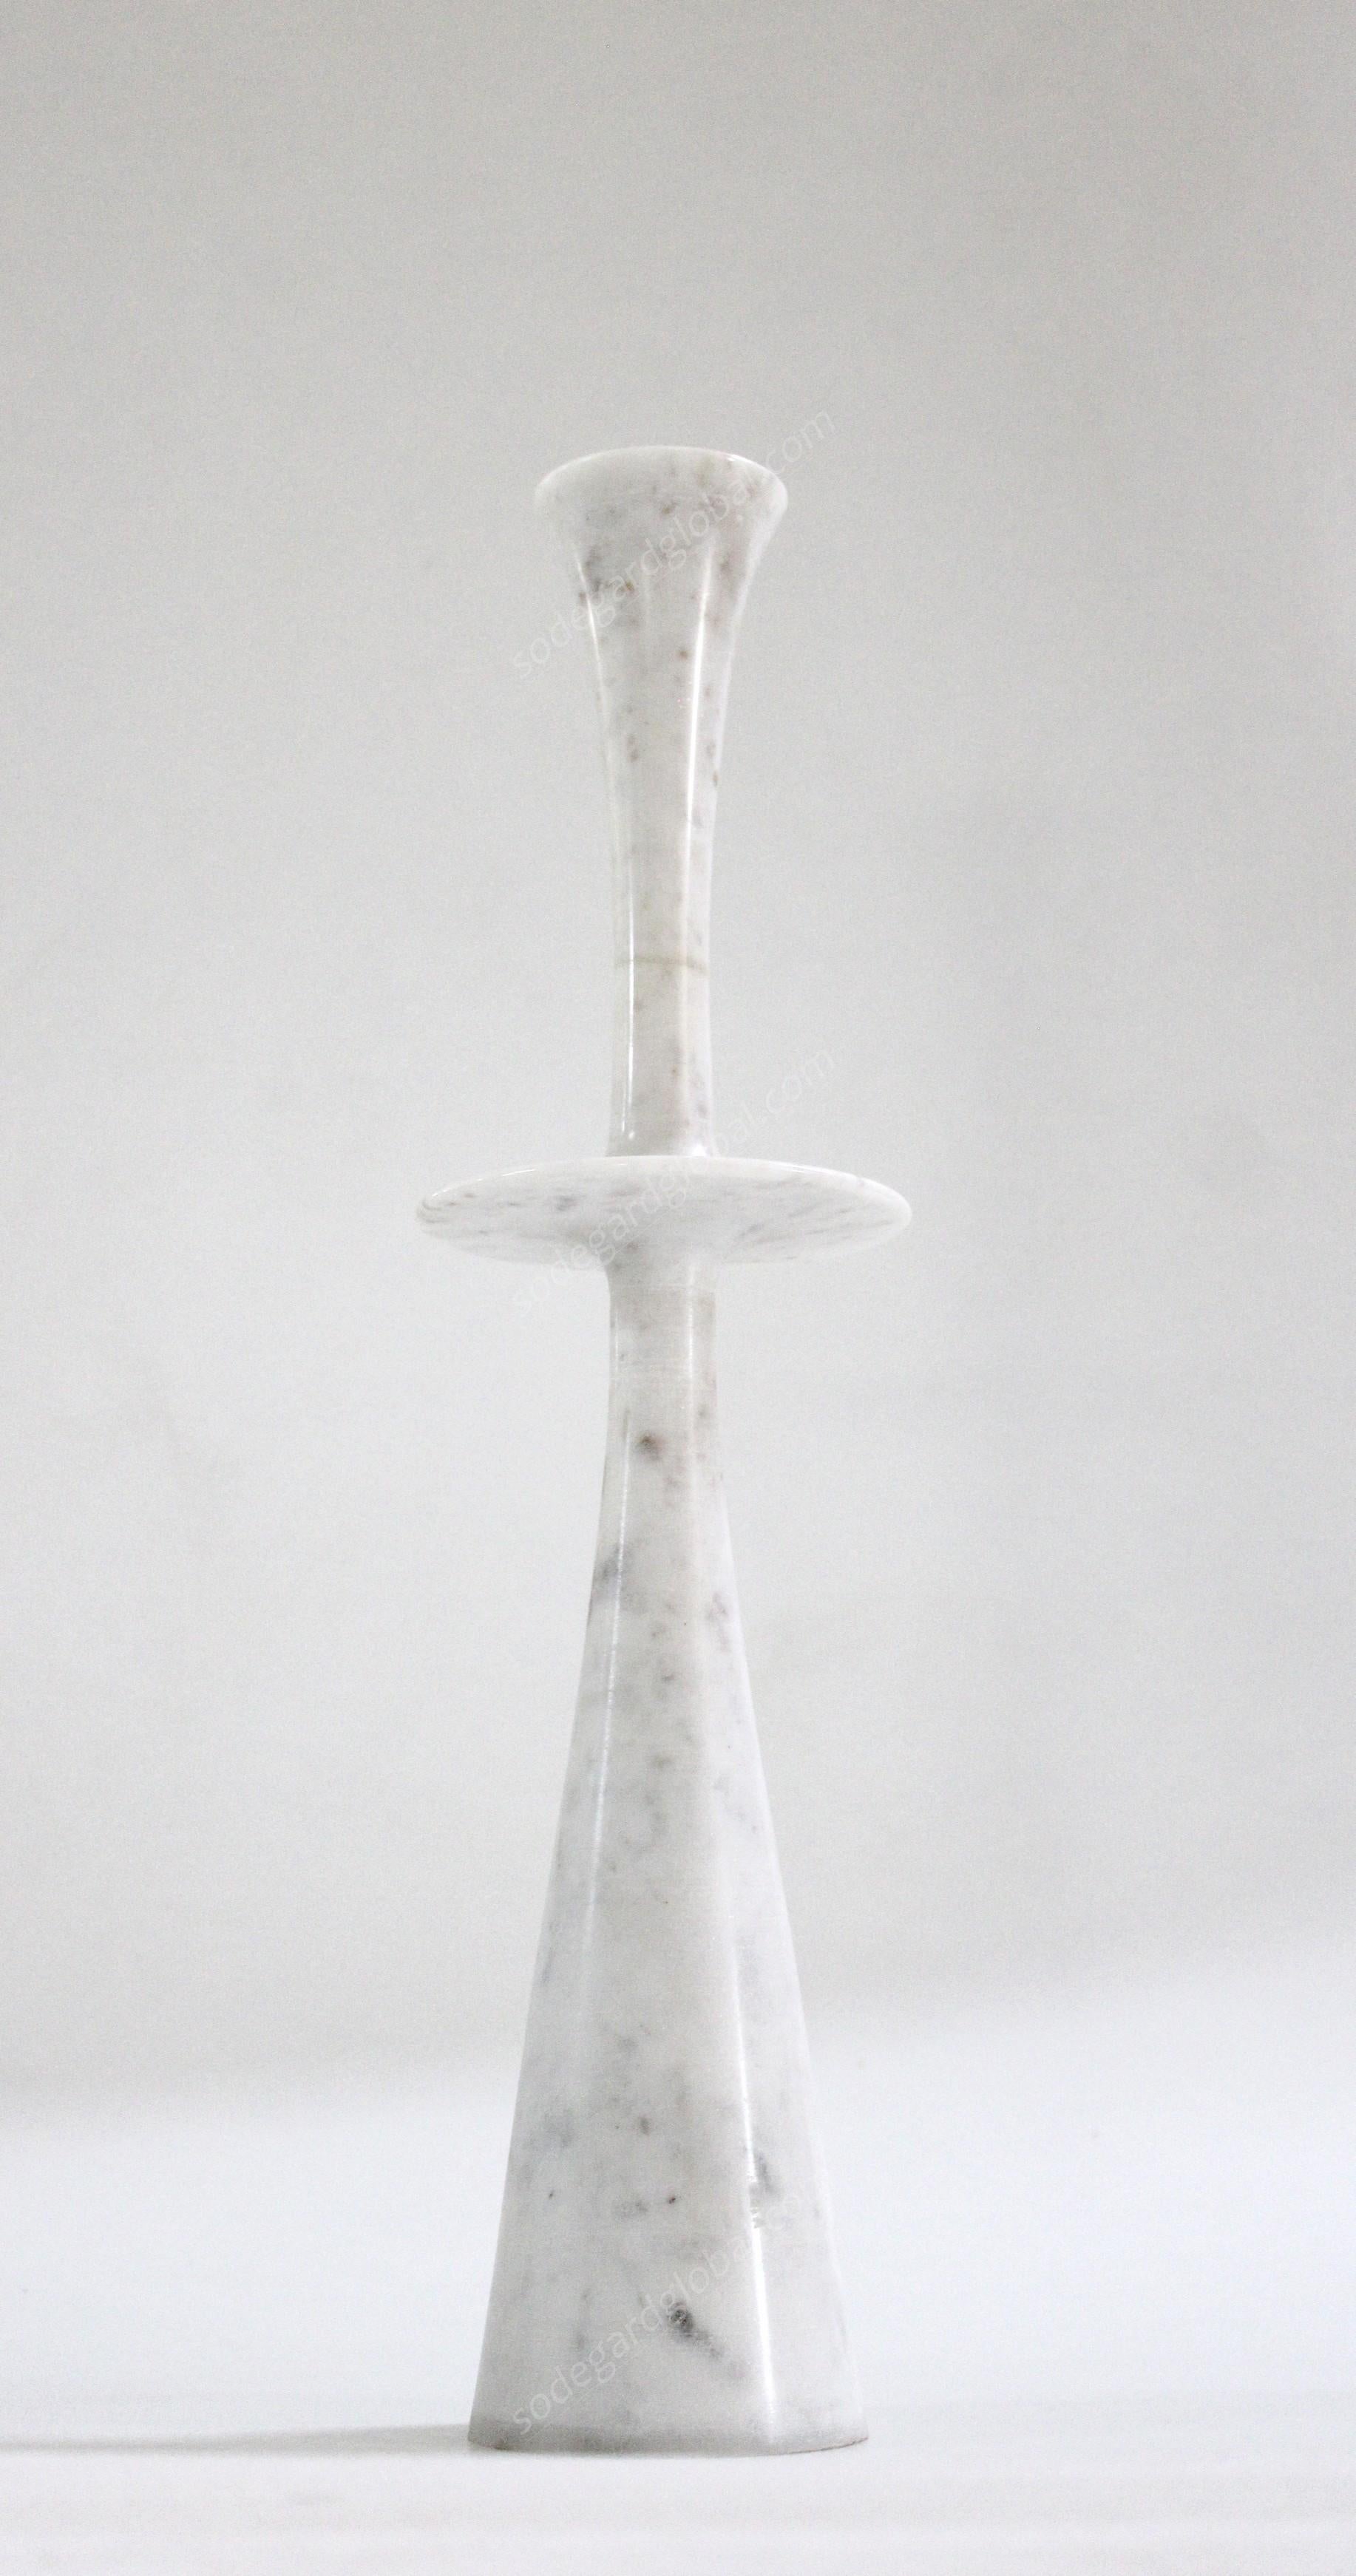 Paul Mathieu a conçu ces élégants chandeliers pour Stephanie Odegard Co. Ltd. De solides pièces de marbre sont tournées pour créer ces délicats motifs : Ove, Flute, Plat I et Plat II.

Chandeliers Plaque i
Taille-  6